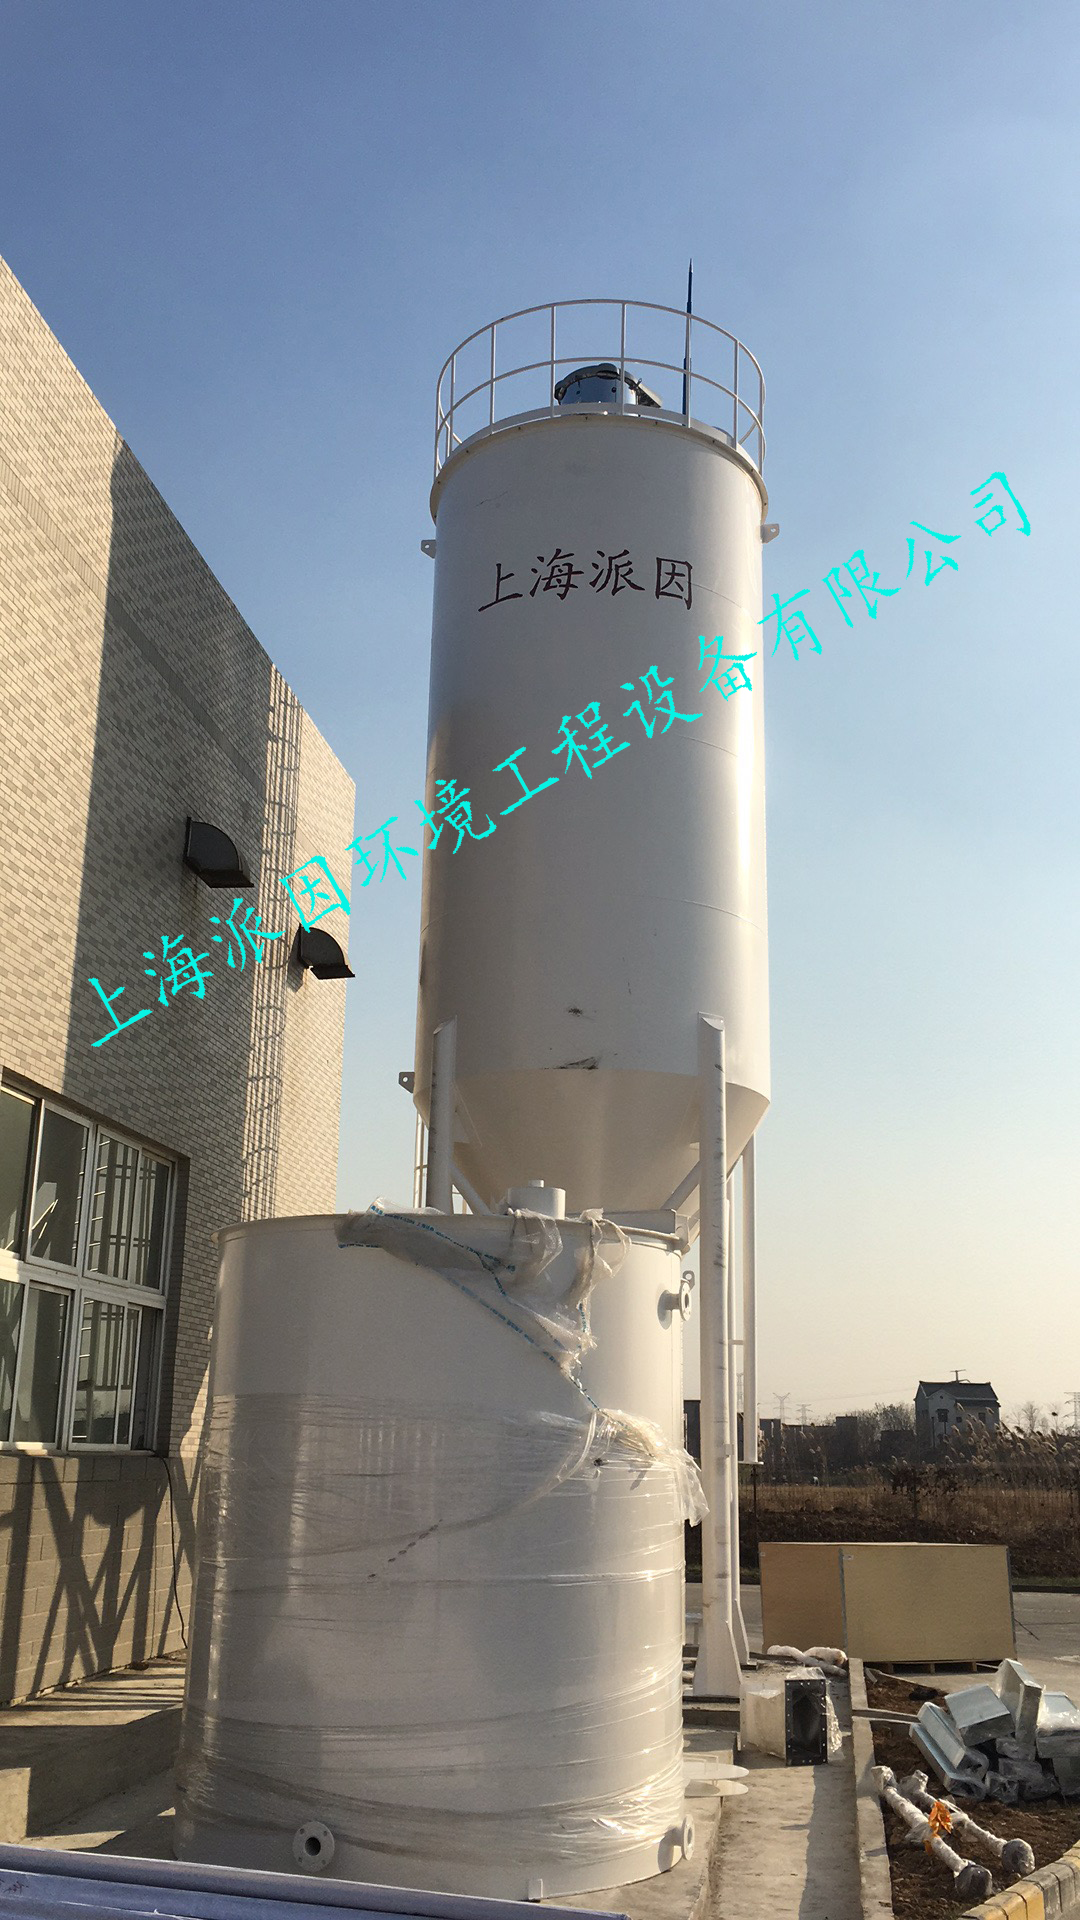 上海派因氧化镁投加系统